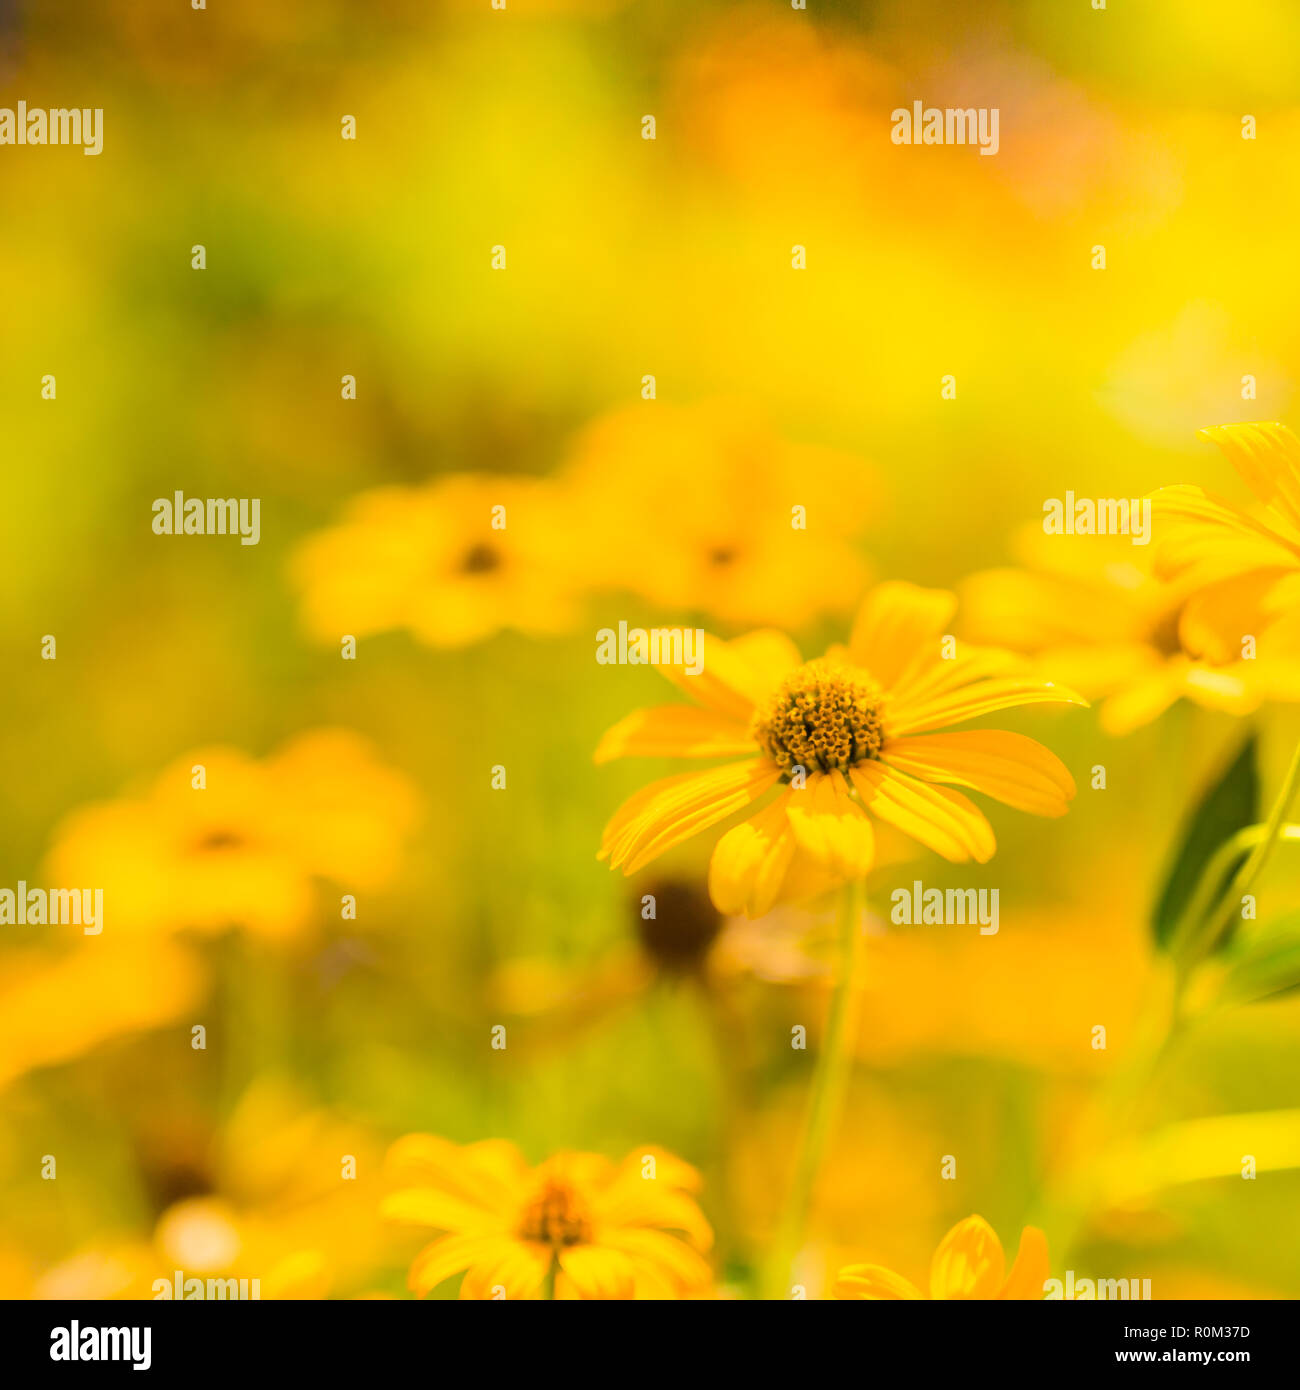 Schöner Frühling Sommer gelb Blumen und verschwommenes Bild Hintergrund. Ruhige Natur Szene, blühenden Blumen und wiese feld Konzept. Entspannende Natur Stockfoto